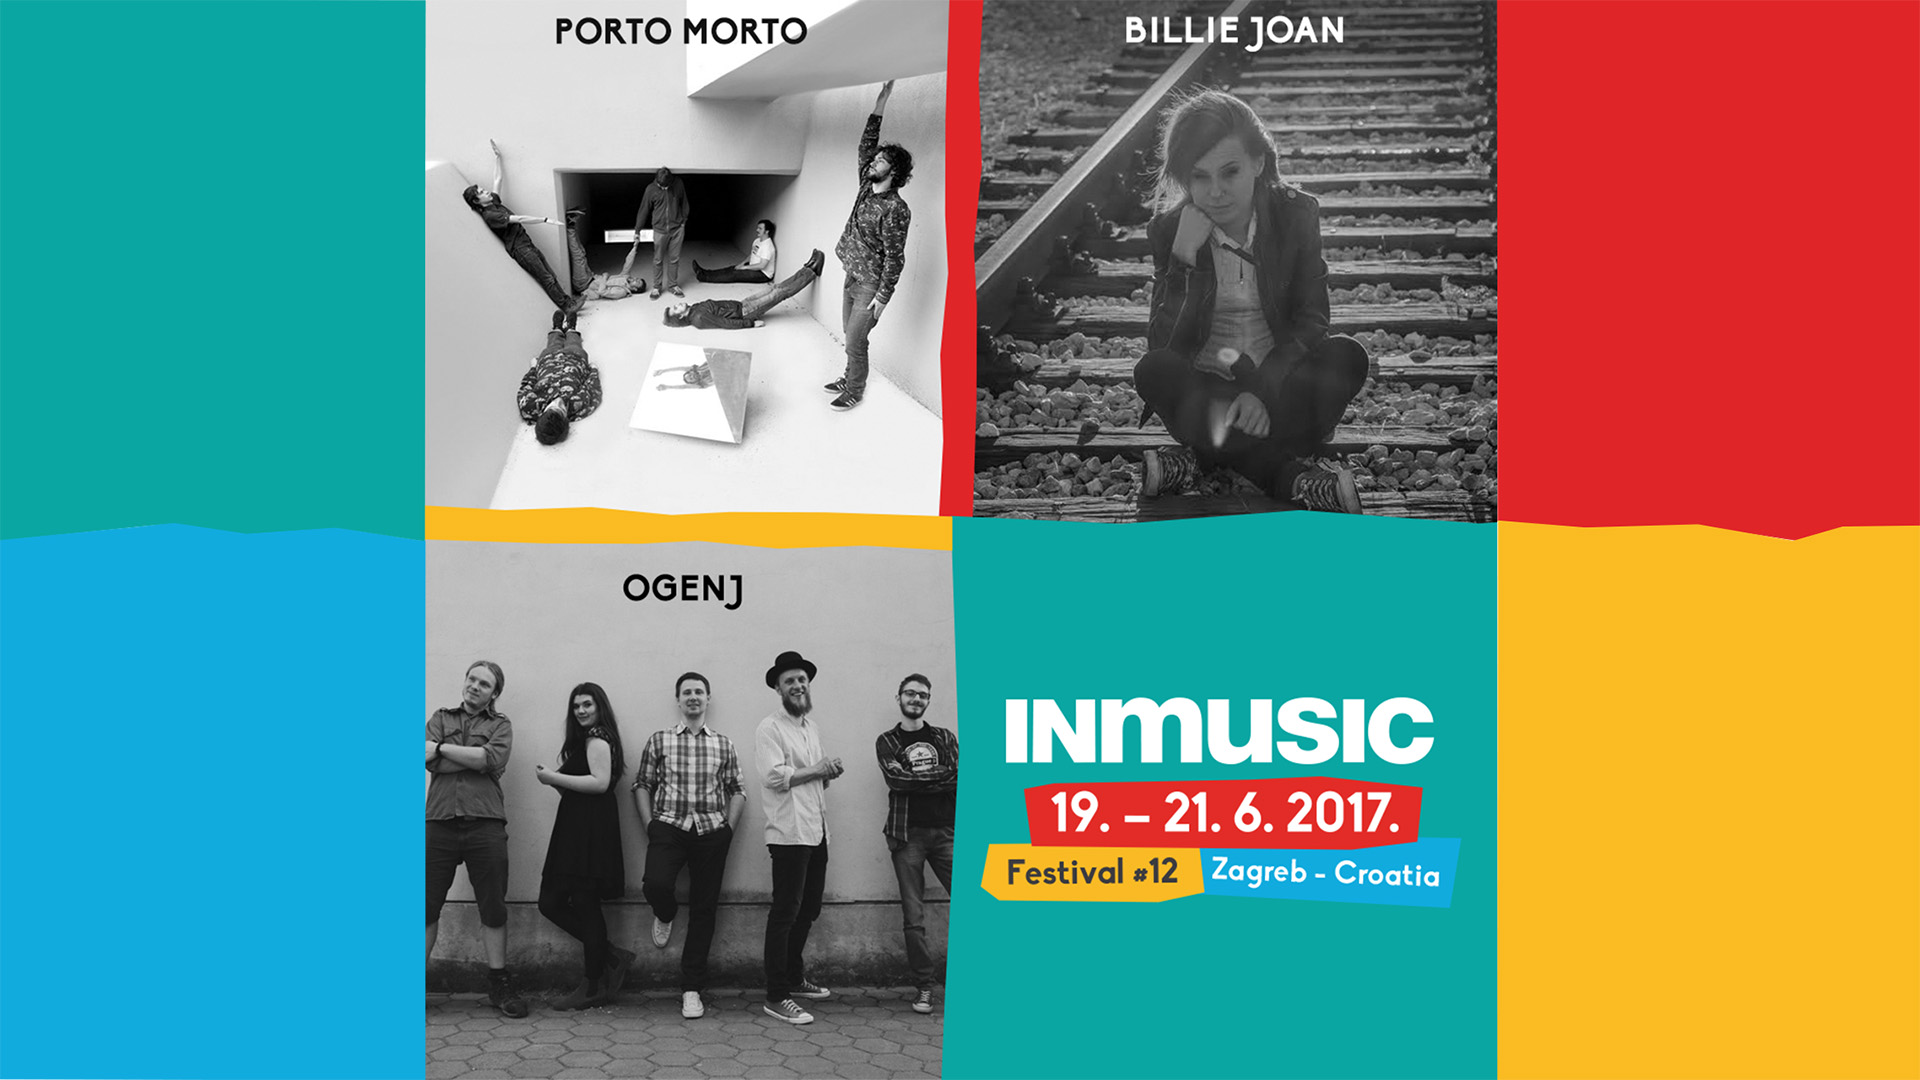 inmusic festival billie joan 2017 1